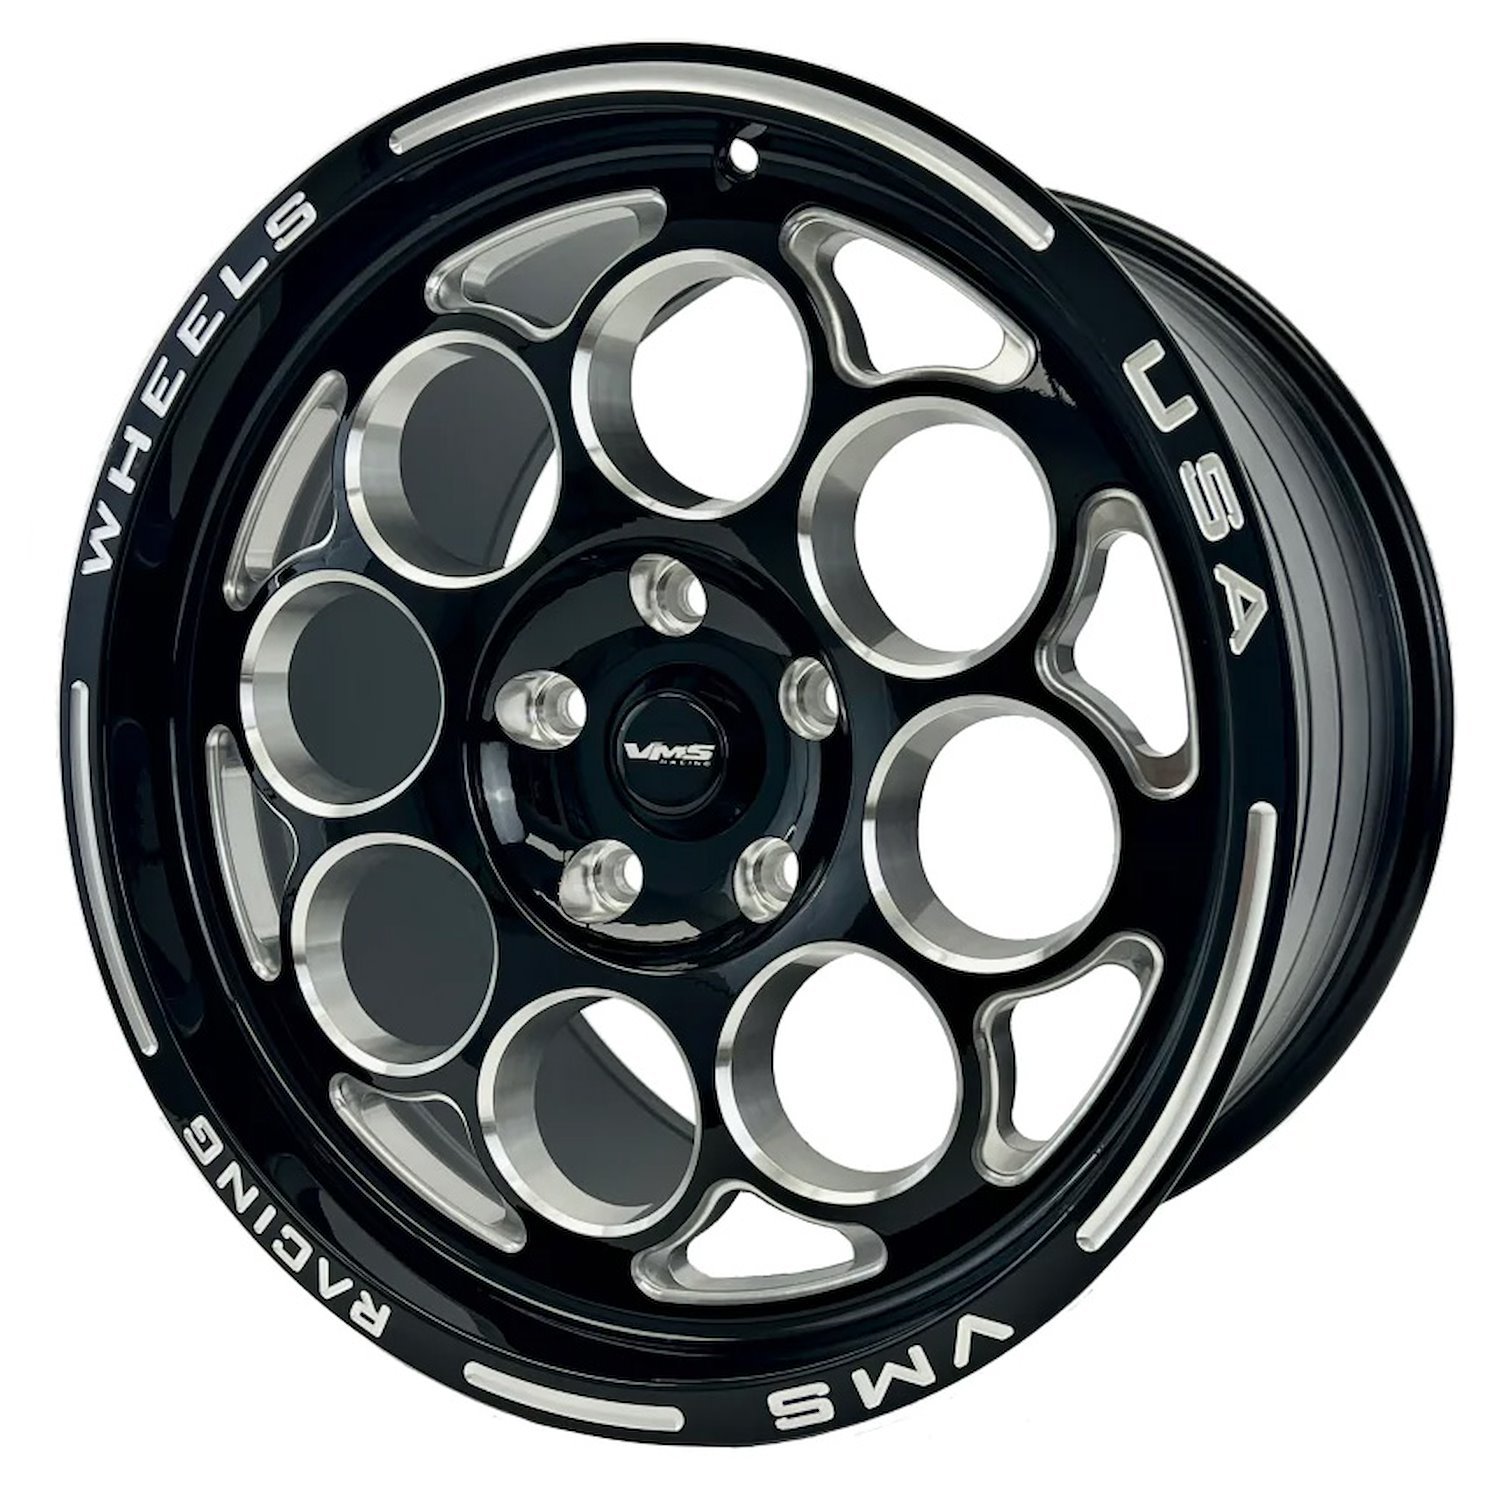 VWMO034 Modulo Wheel, Size: 17" x 10", Bolt Pattern: 5 x 4 3/4" (120.65 mm) [Finish: Gloss Black Milled]